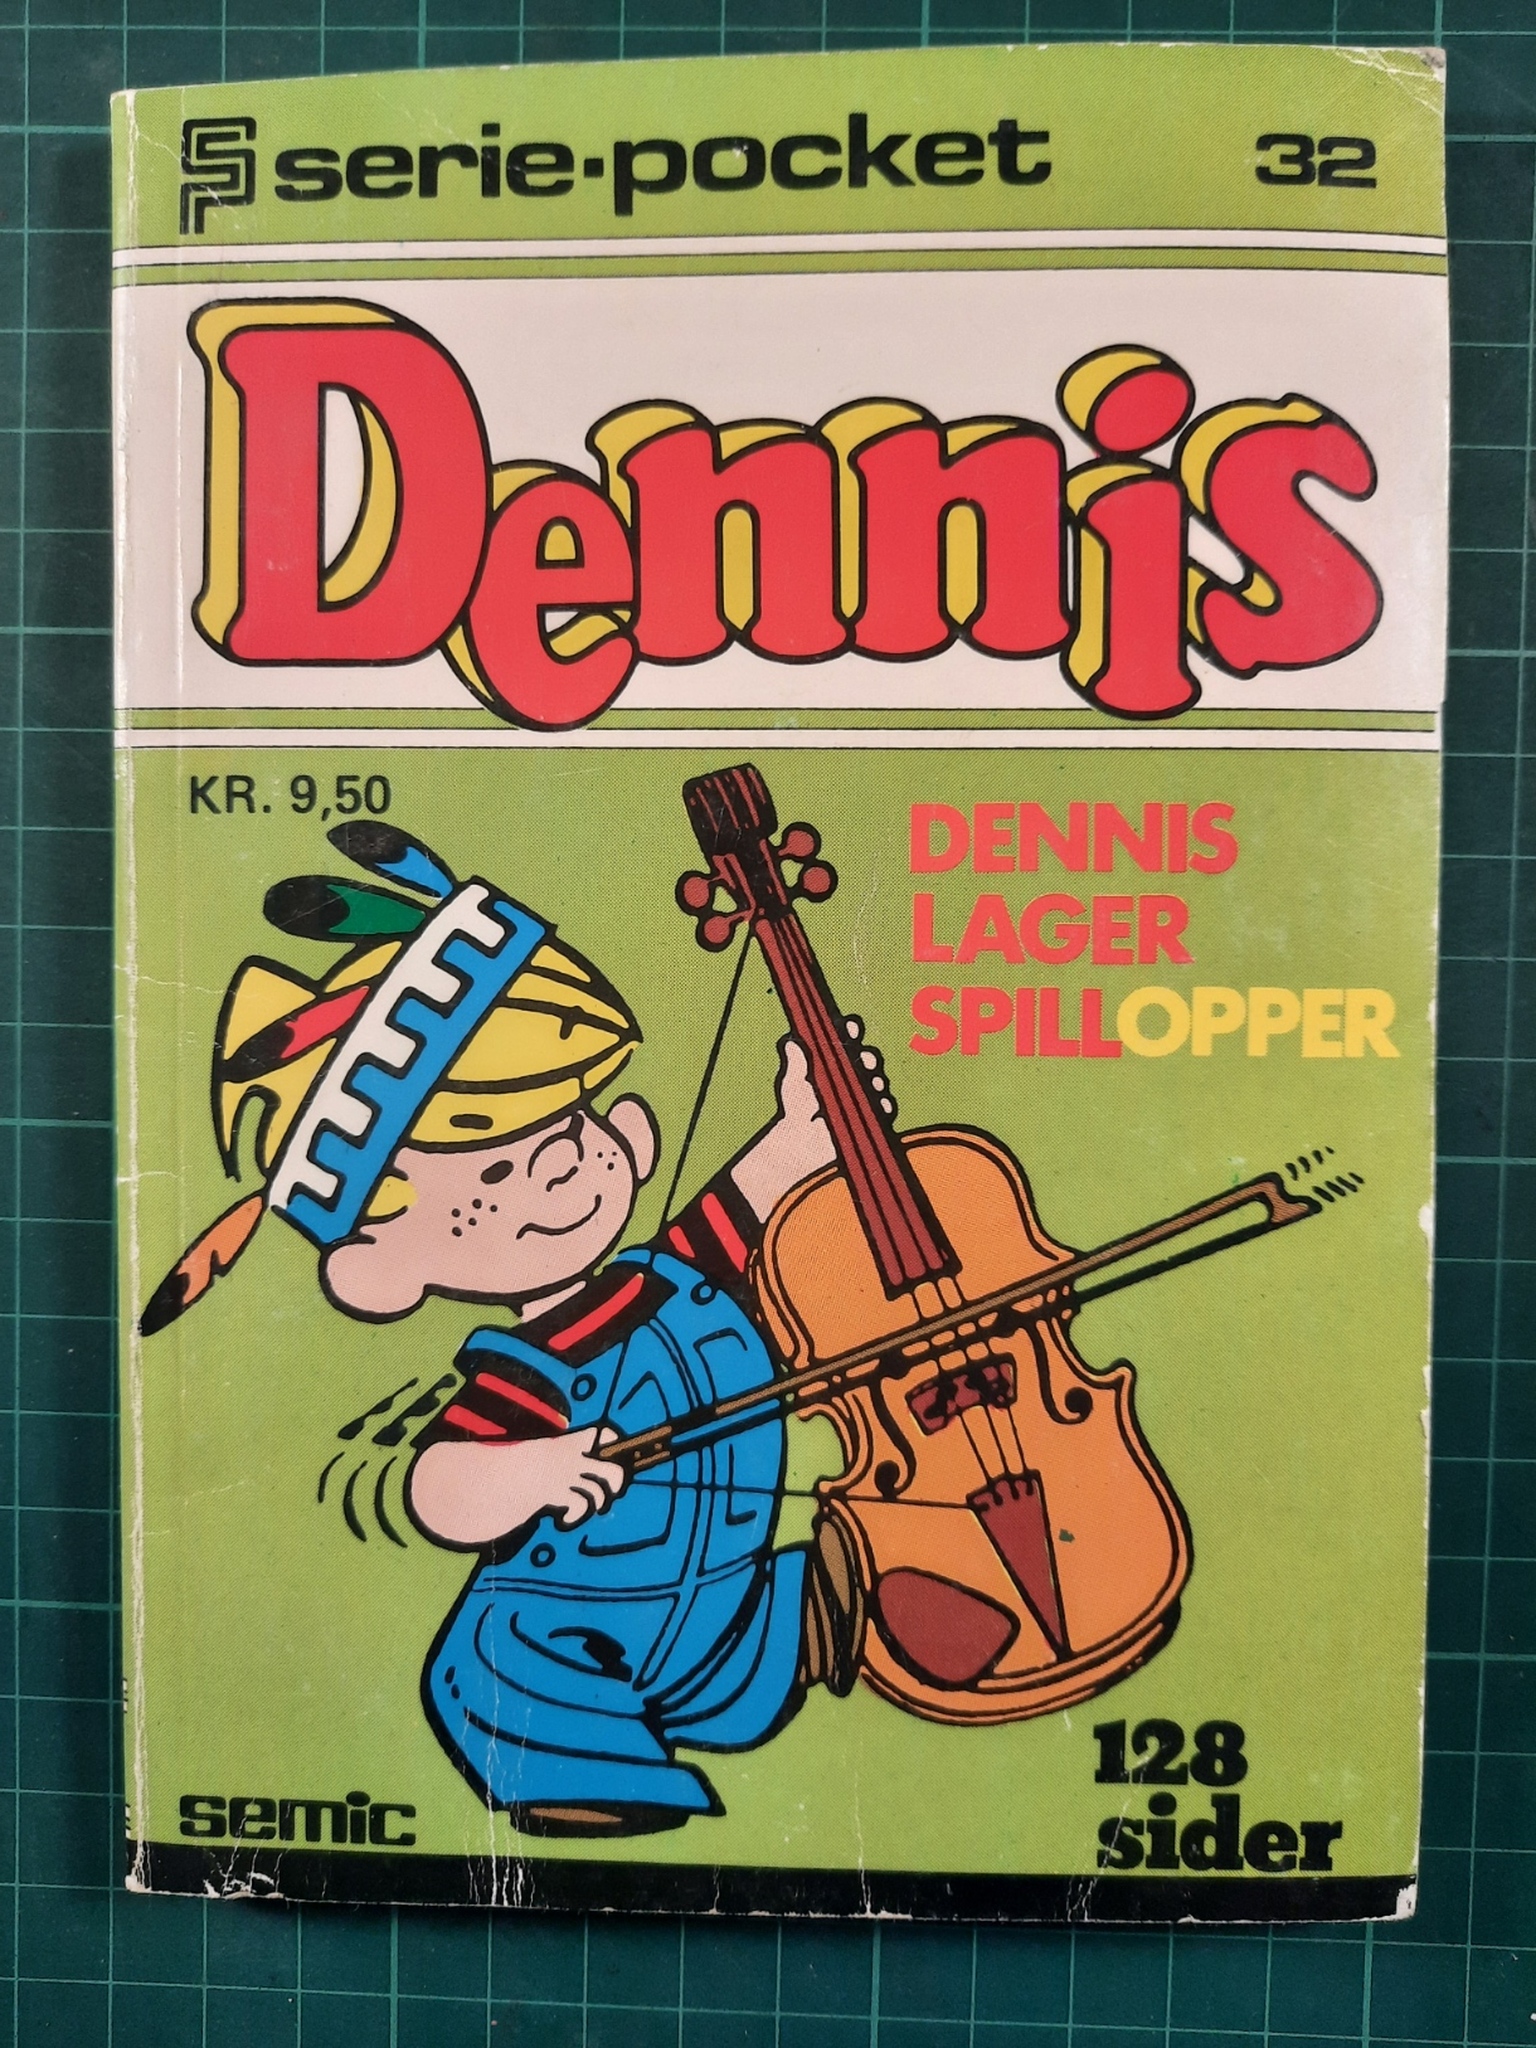 Serie-pocket 032 : Dennis